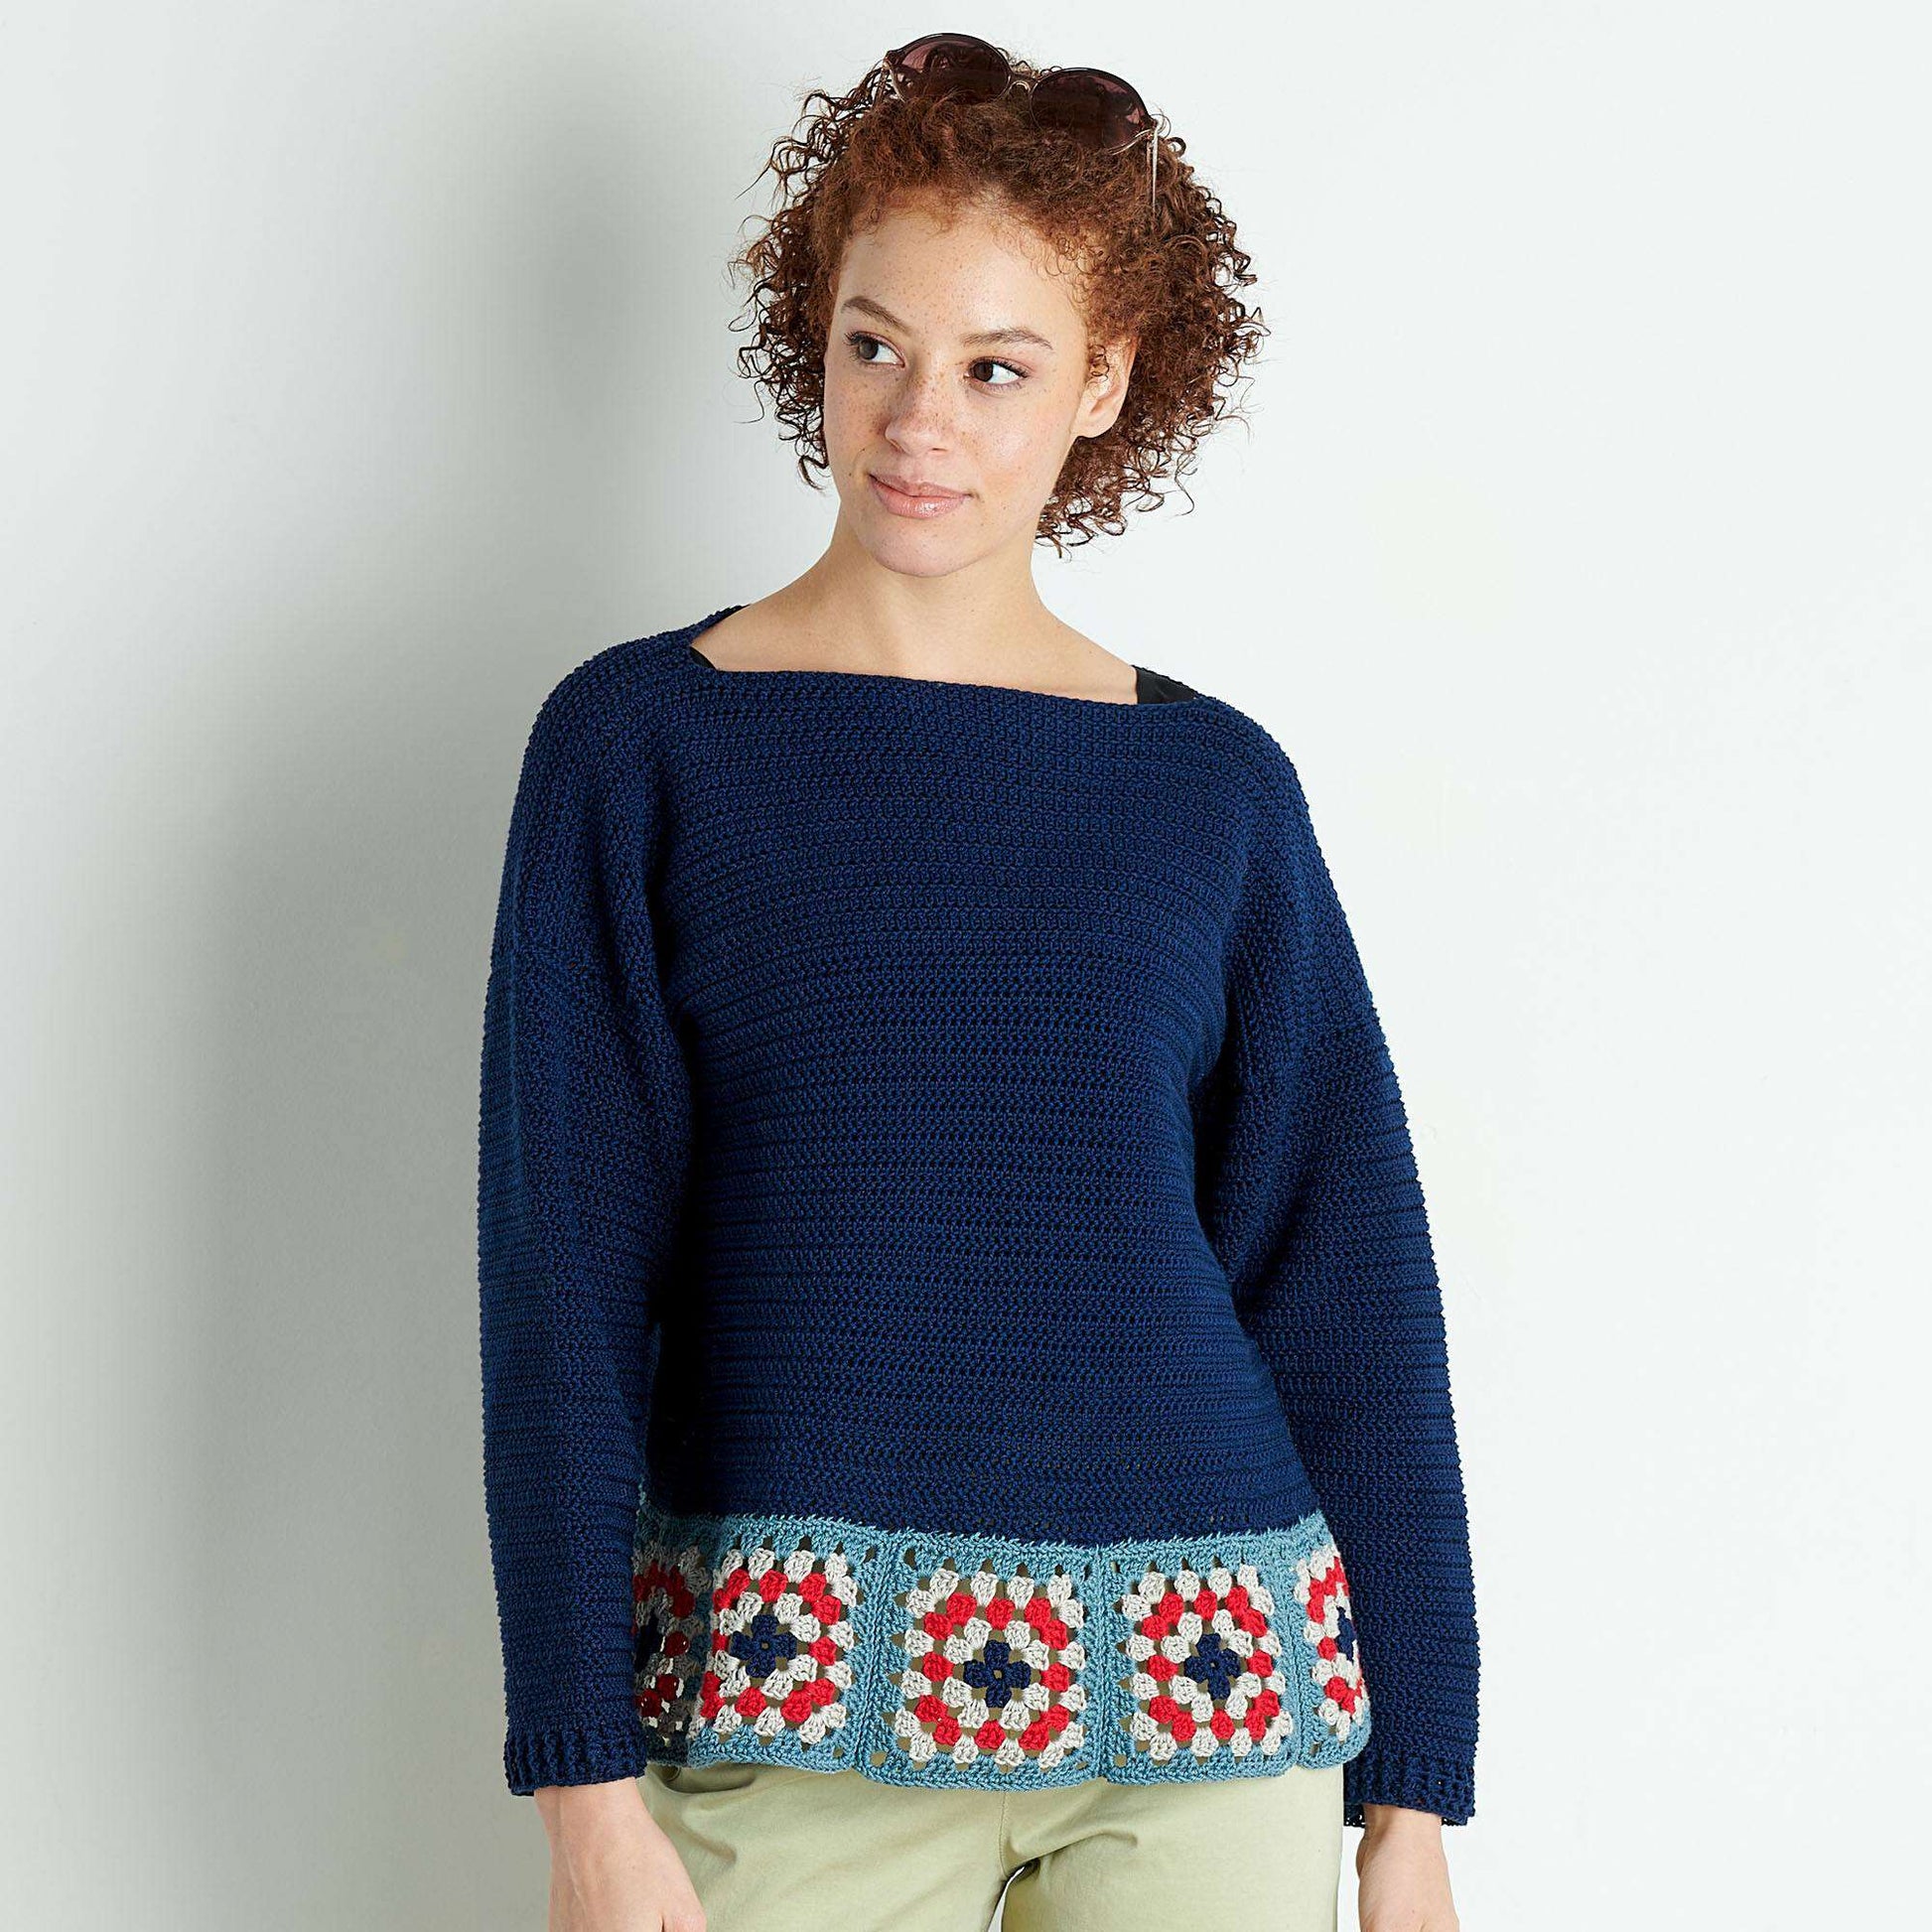 Free Patons Motif Trim Crochet Top Pattern